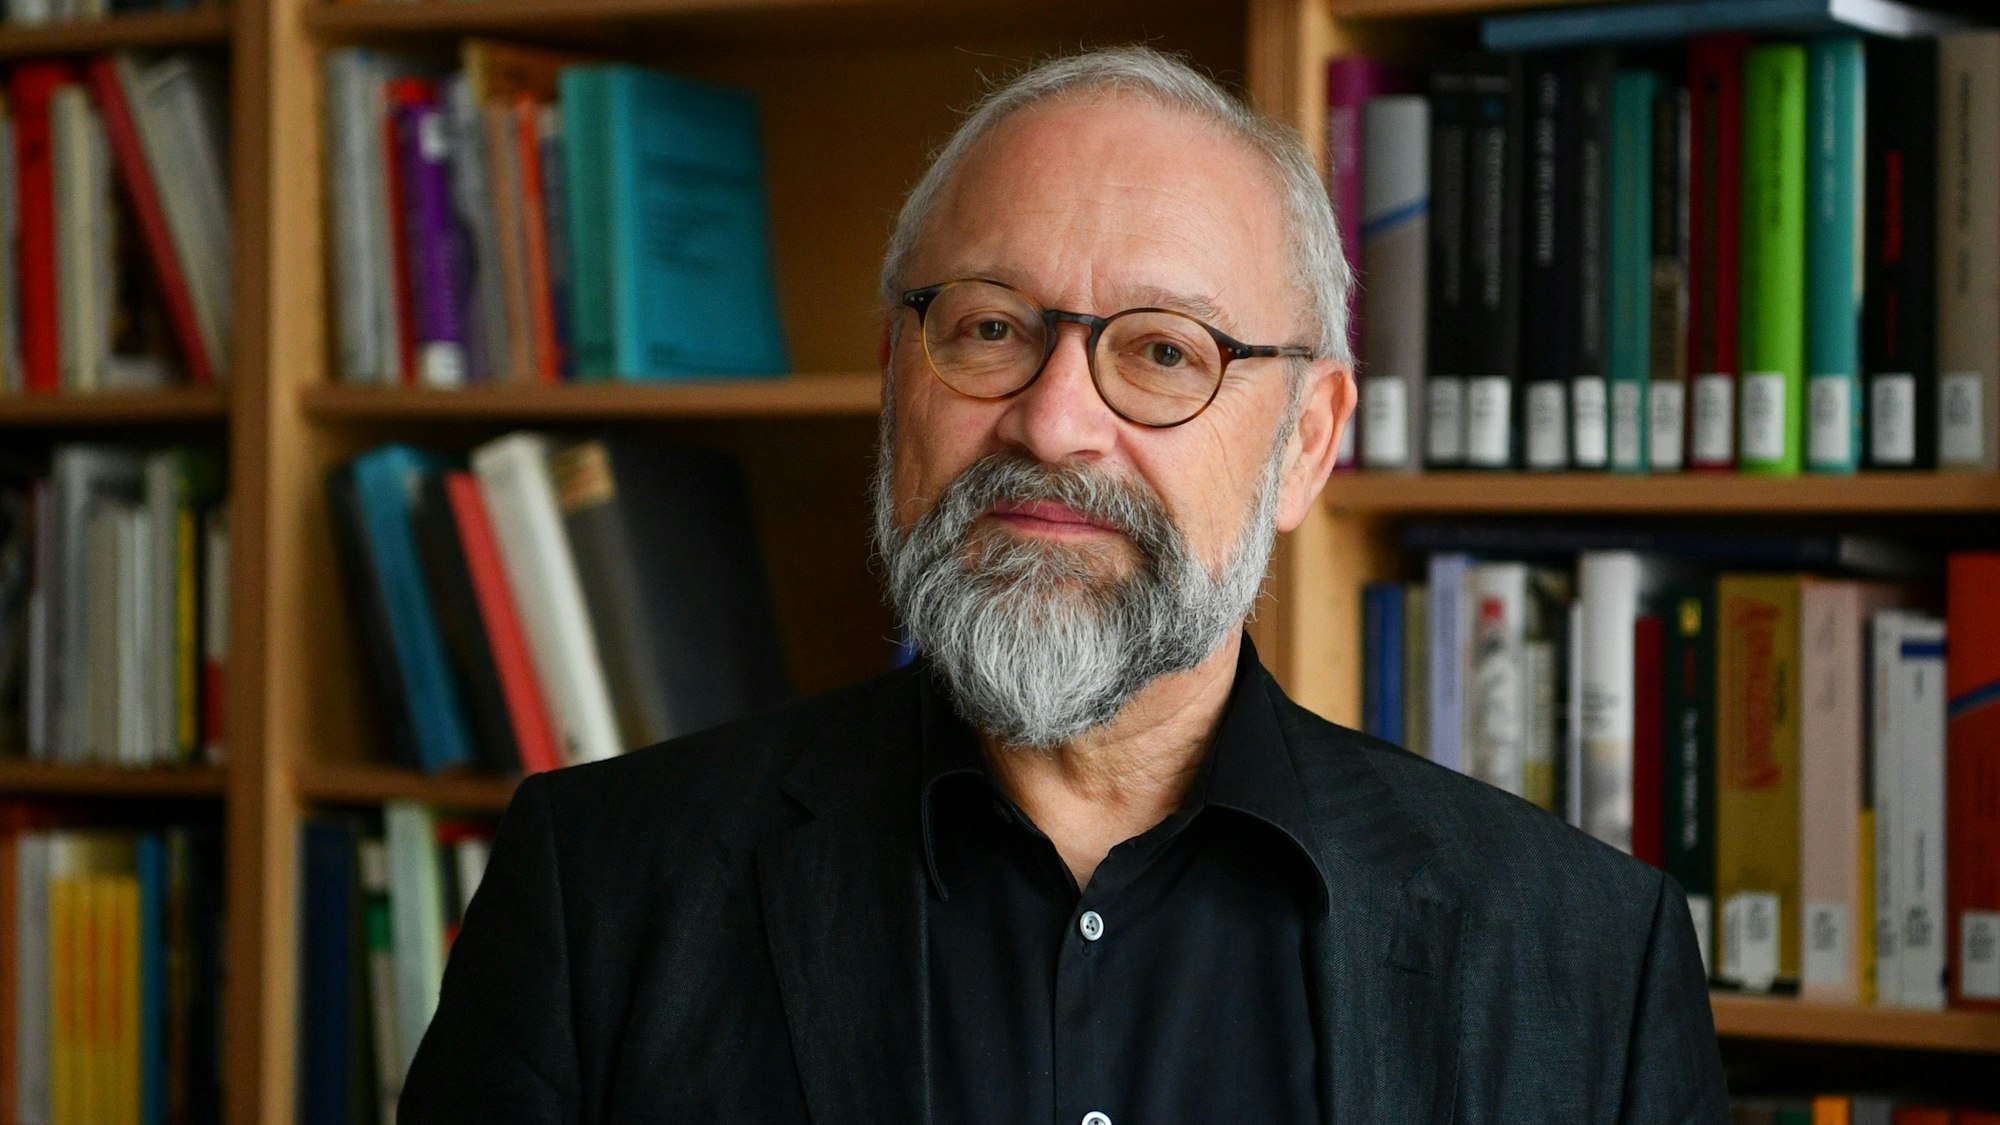 Herfried Münkler ist Professor für Politikwissenschaft an der Berliner Humboldt-Universität und Mitglied der Berlin-Brandenburgischen Akademie der Wissenschaften.